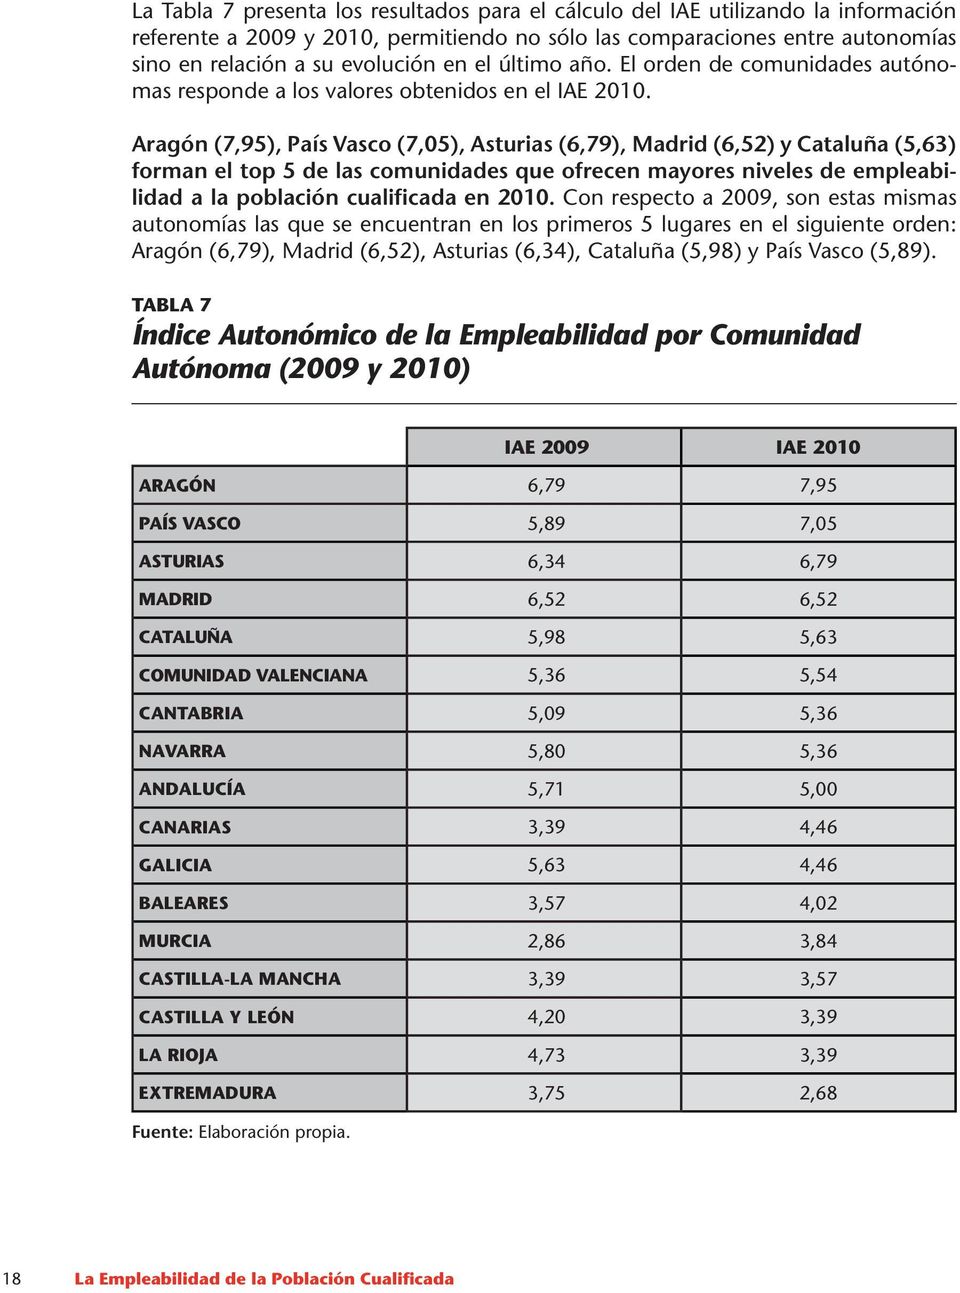 Aragón (7,95), País Vasco (7,05), Asturias (6,79), Madrid (6,52) y Cataluña (5,63) forman el top 5 de las comunidades que ofrecen mayores niveles de empleabilidad a la población cualificada en 2010.